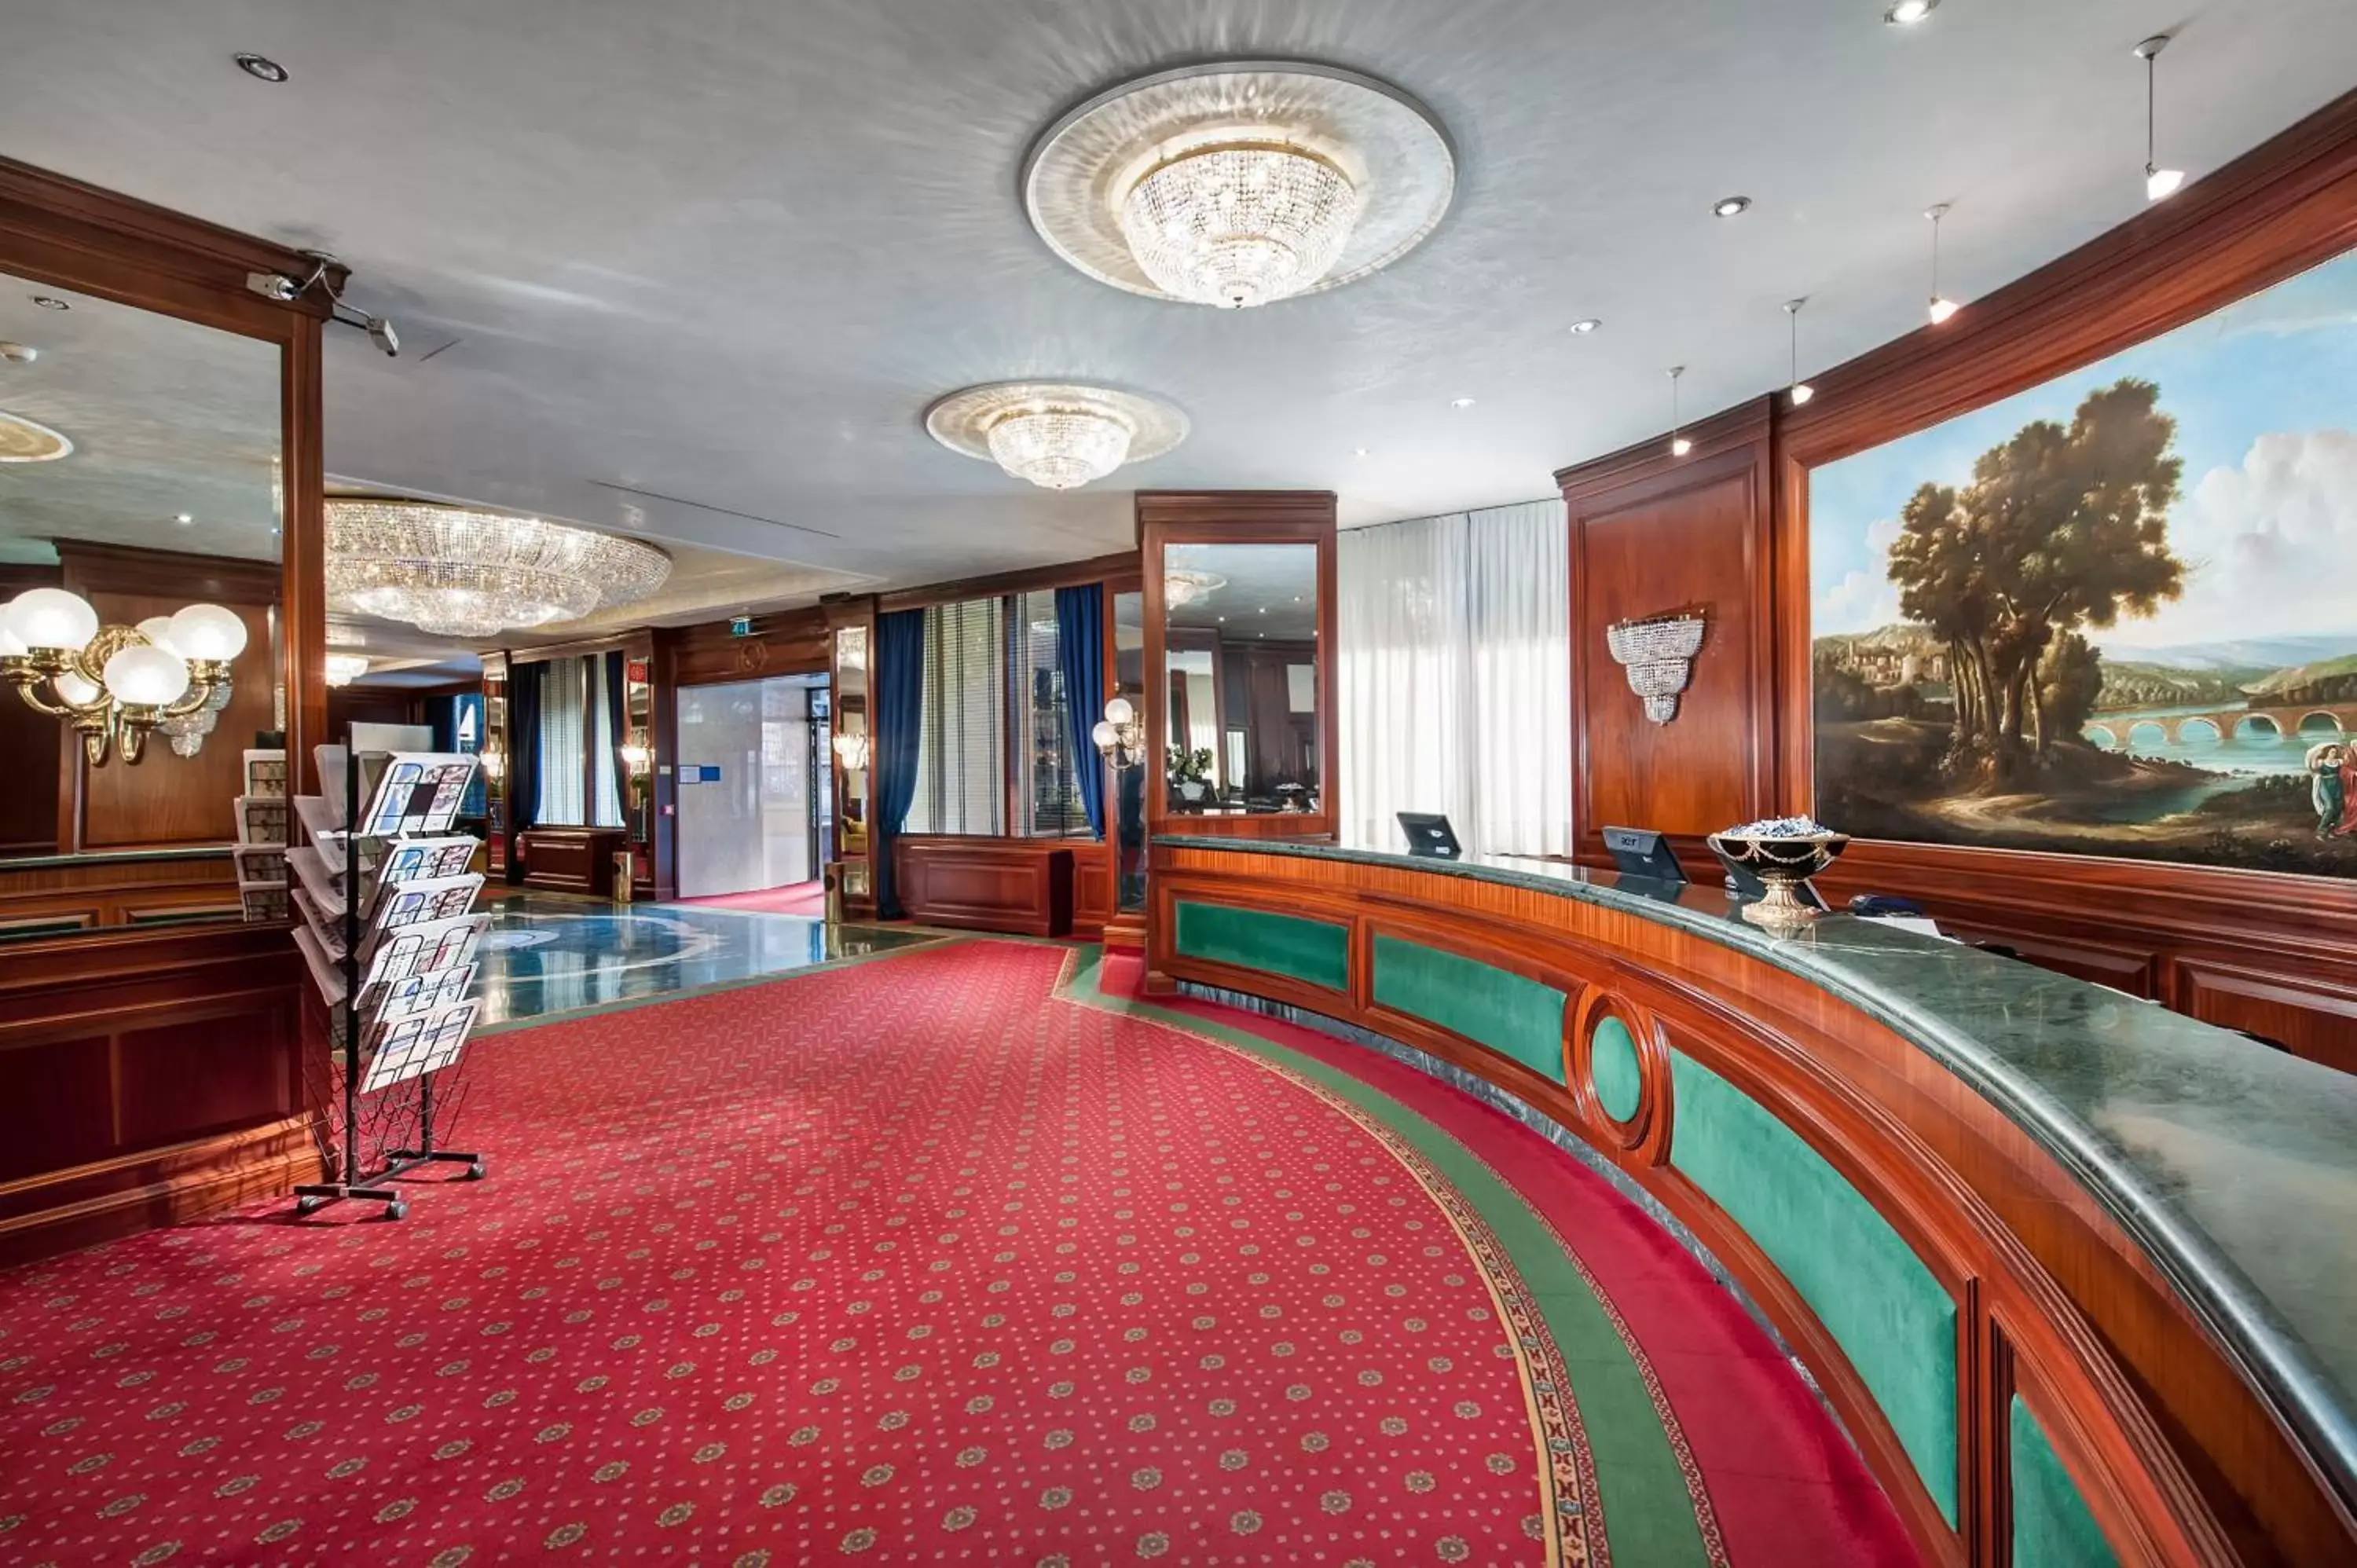 Lobby or reception, Lobby/Reception in Royal Hotel Carlton